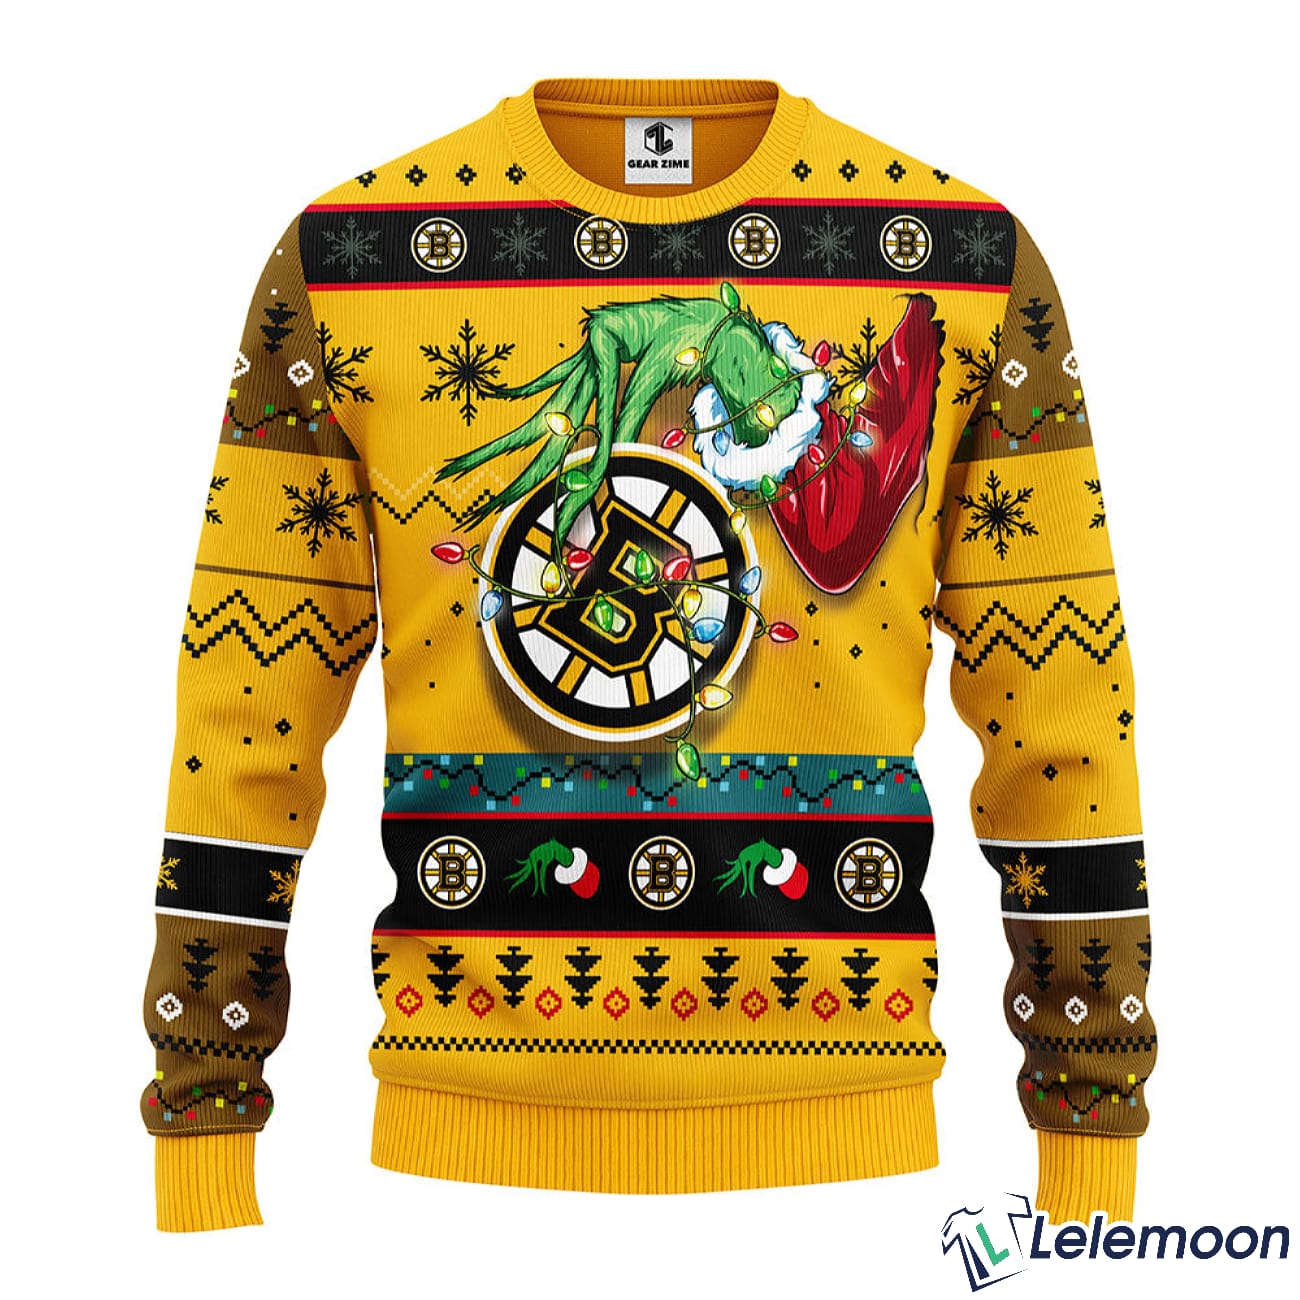 Santa Baby Groot Hug Boston Bruins Christmas sweater, hoodie